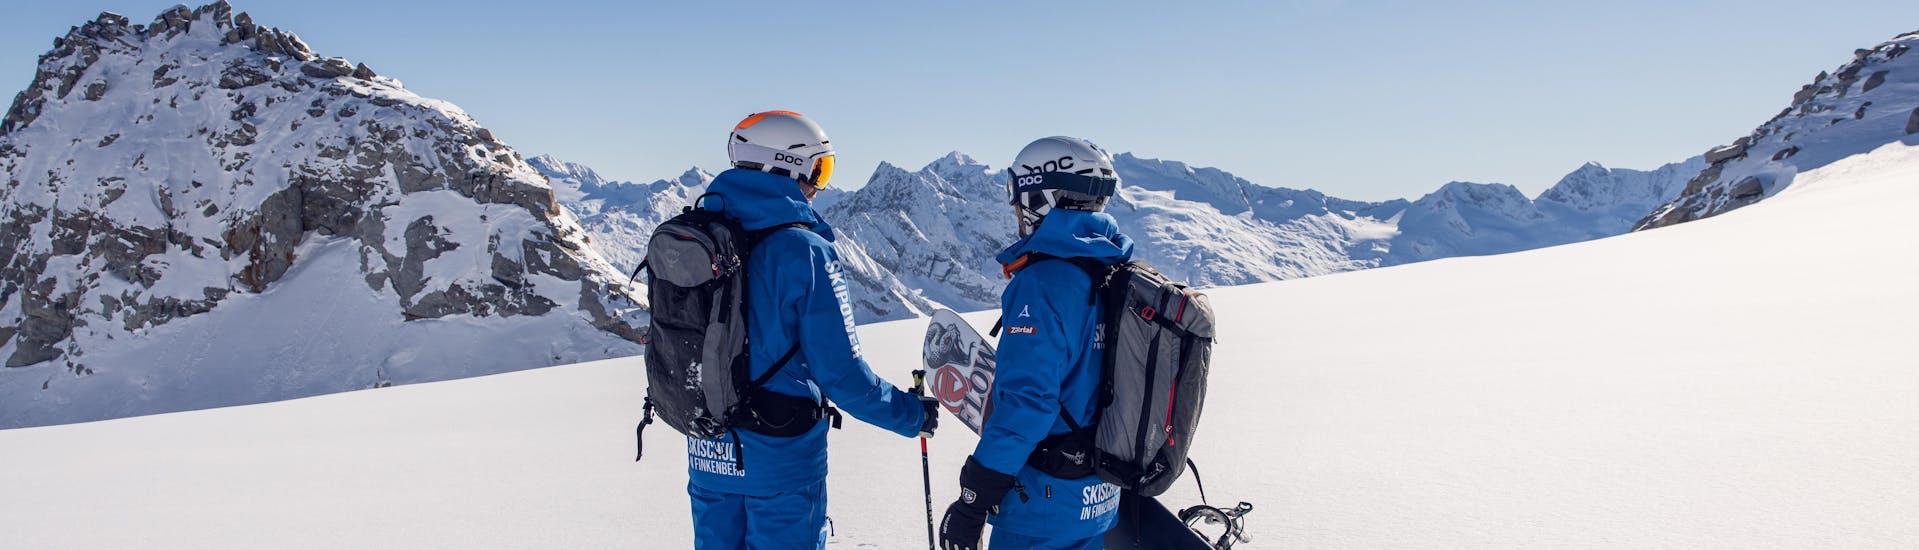 Clases de esquí de travesía privadas para todos los niveles con Ski School Skipower Finkenberg.